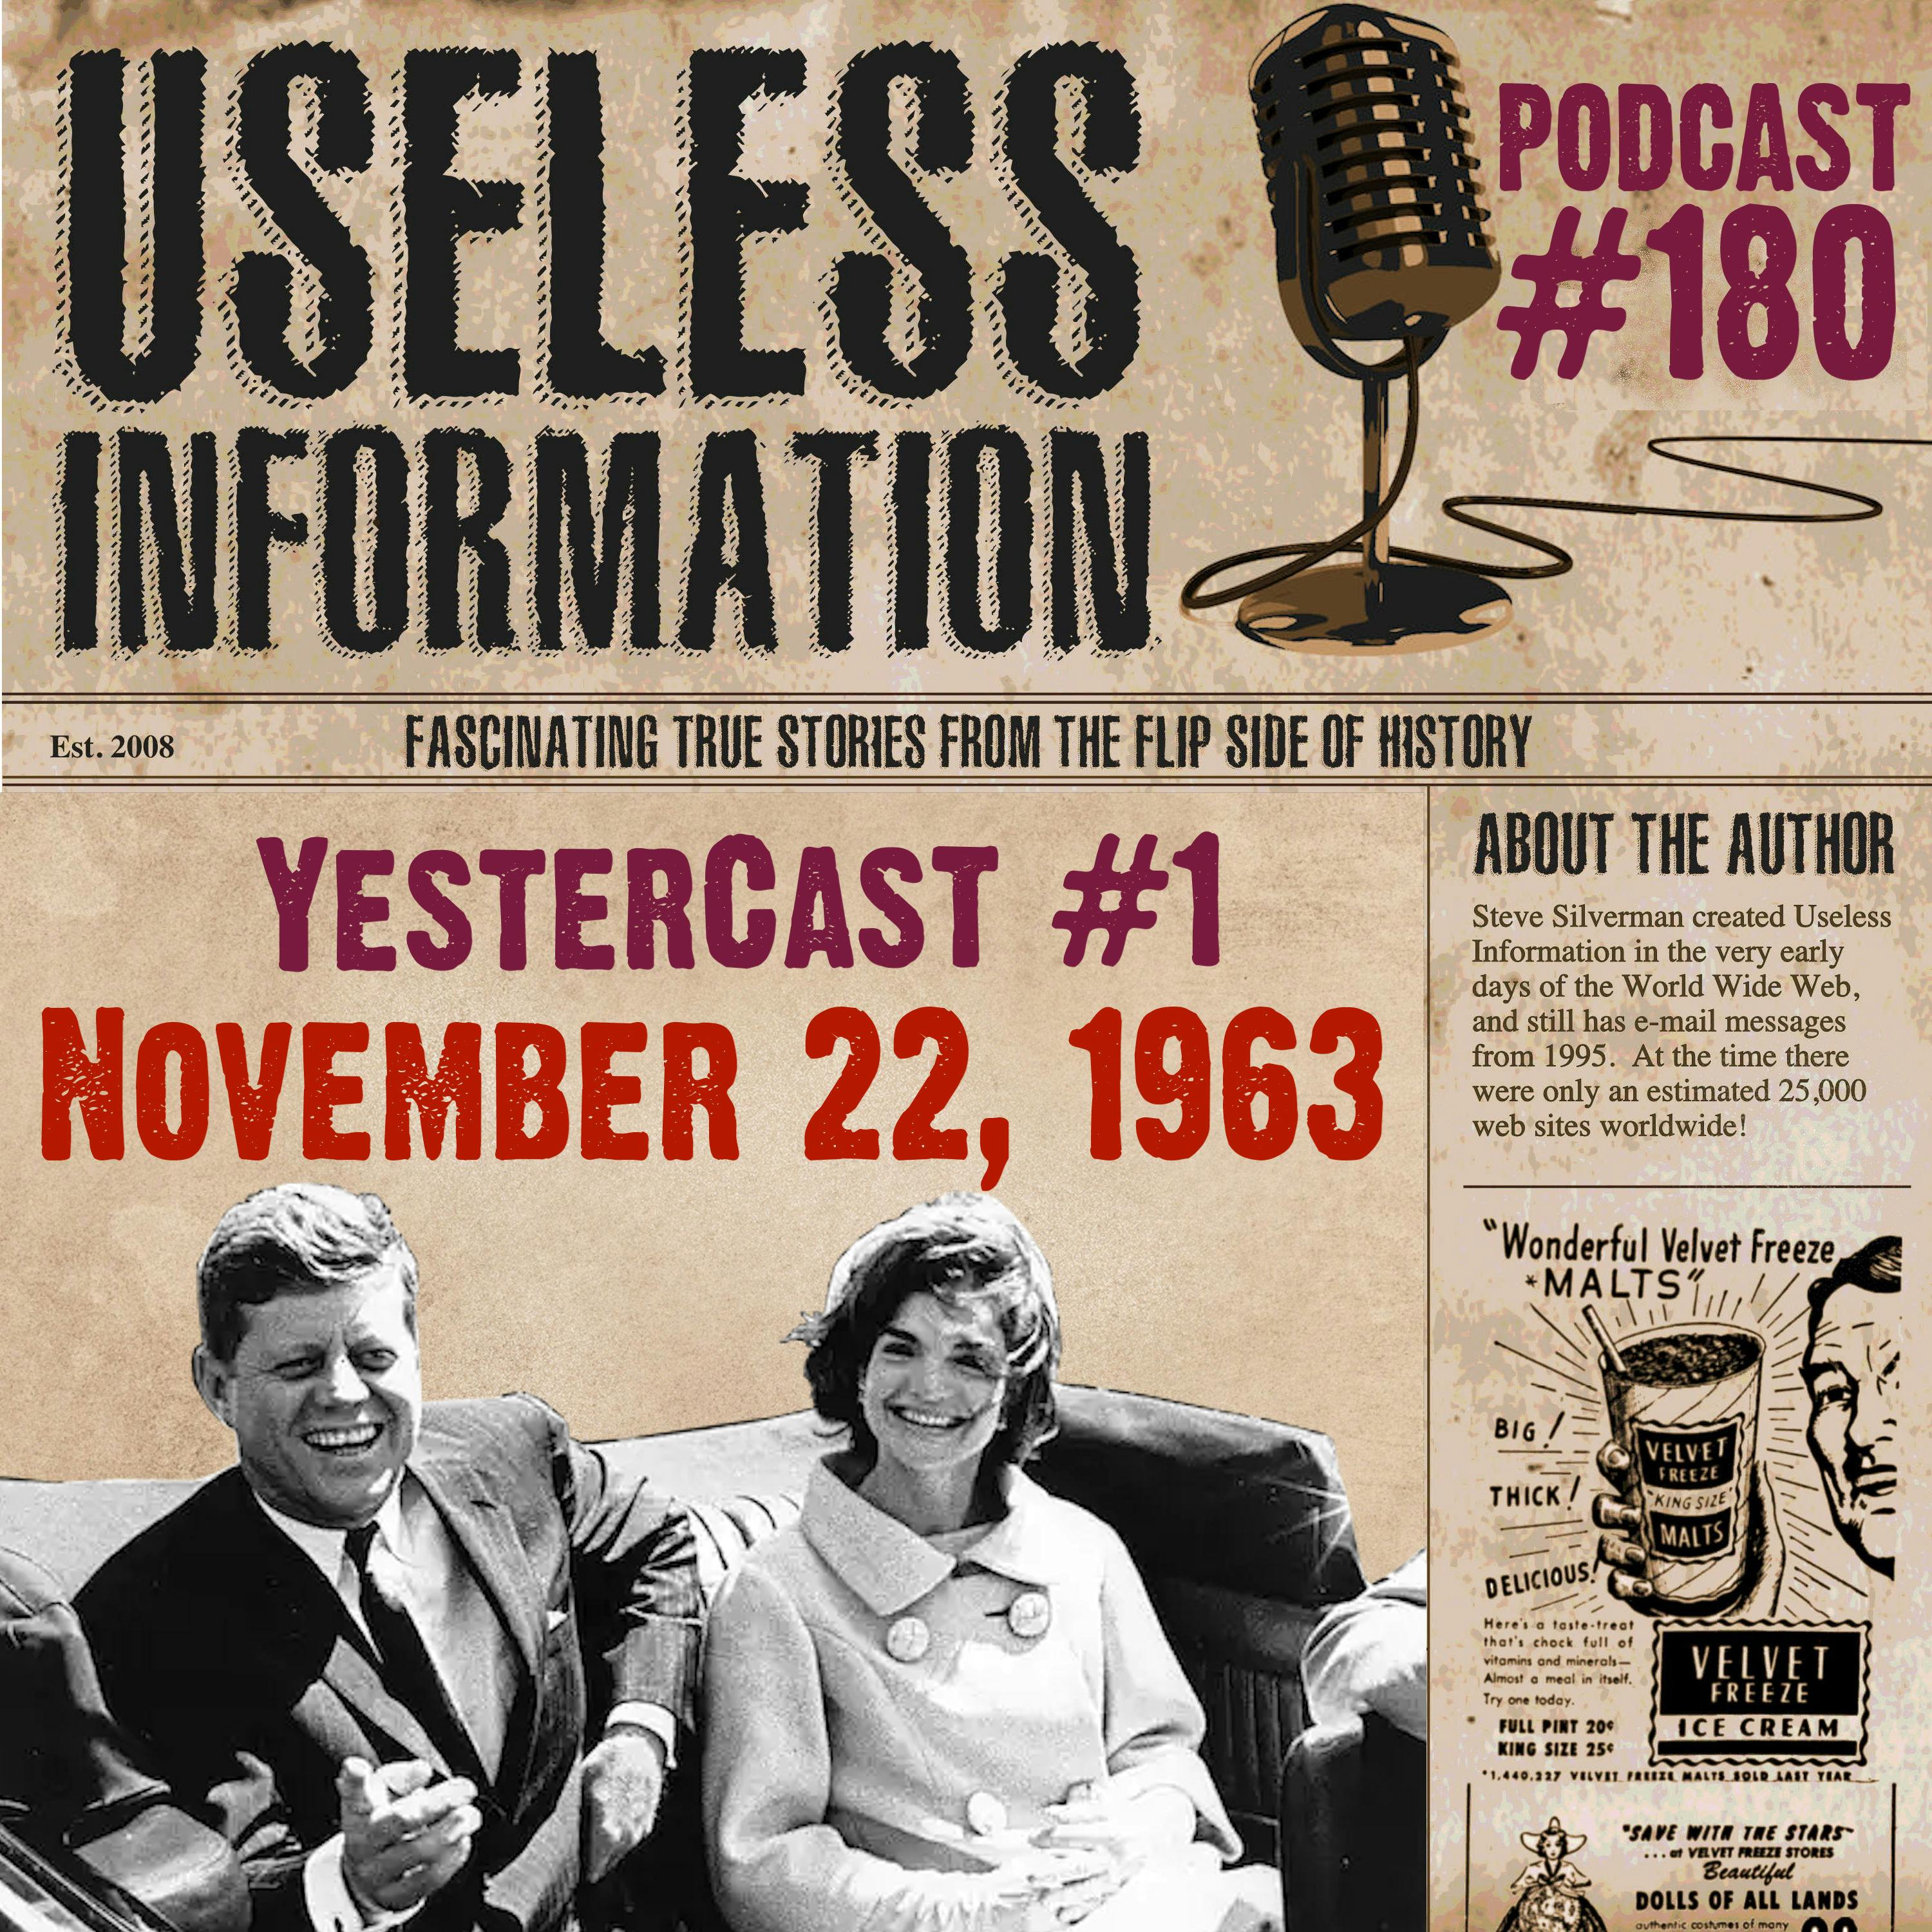 YesterCast #1 - November 22, 1963 - UI #180